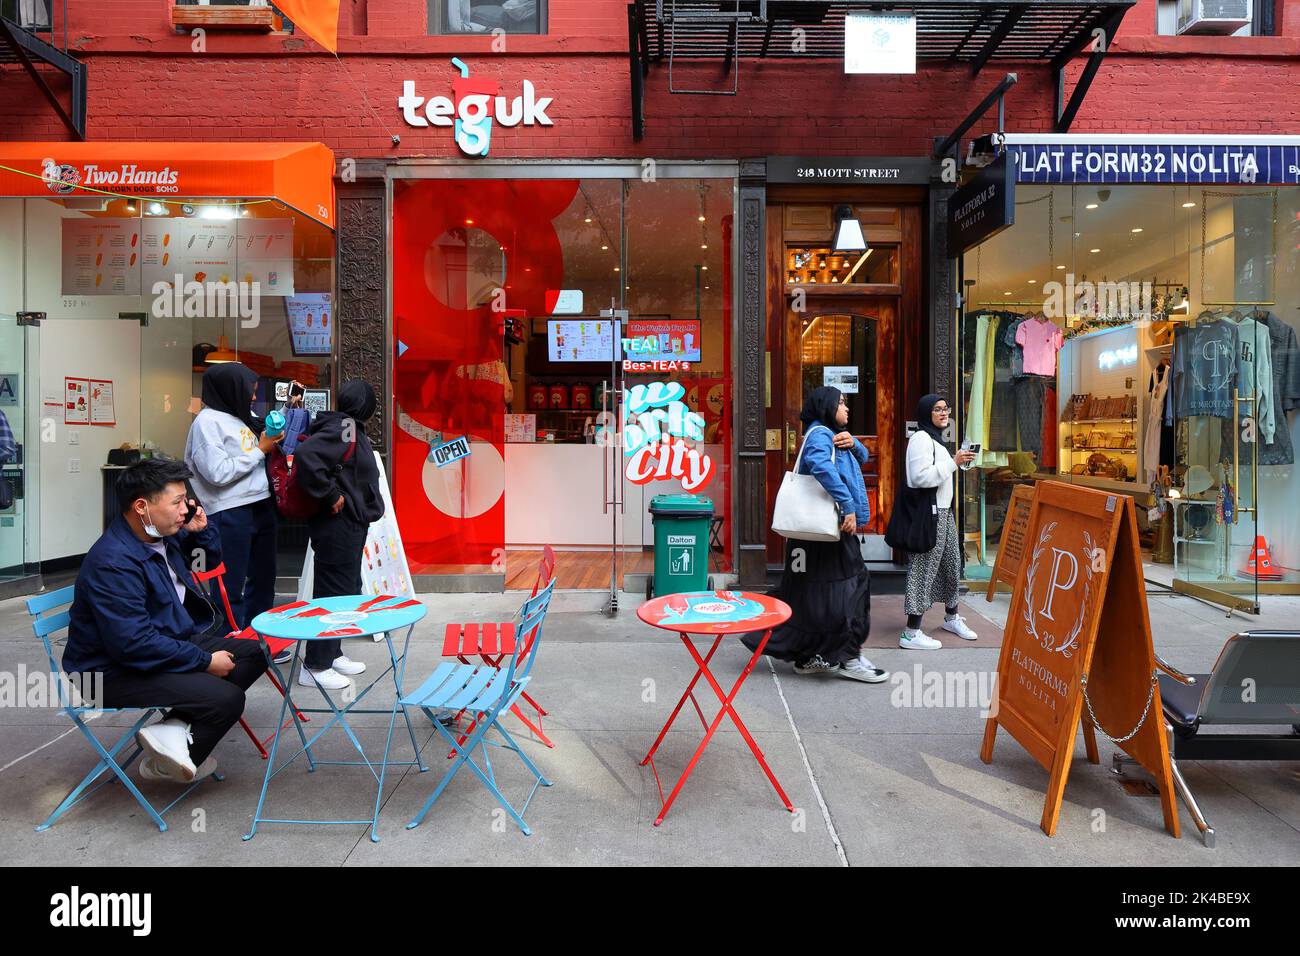 Teguk, 246 Mott St, New York, NYC foto di una catena indonesiana di negozi di tè bolla nel quartiere Nolita a Manhattan Foto Stock